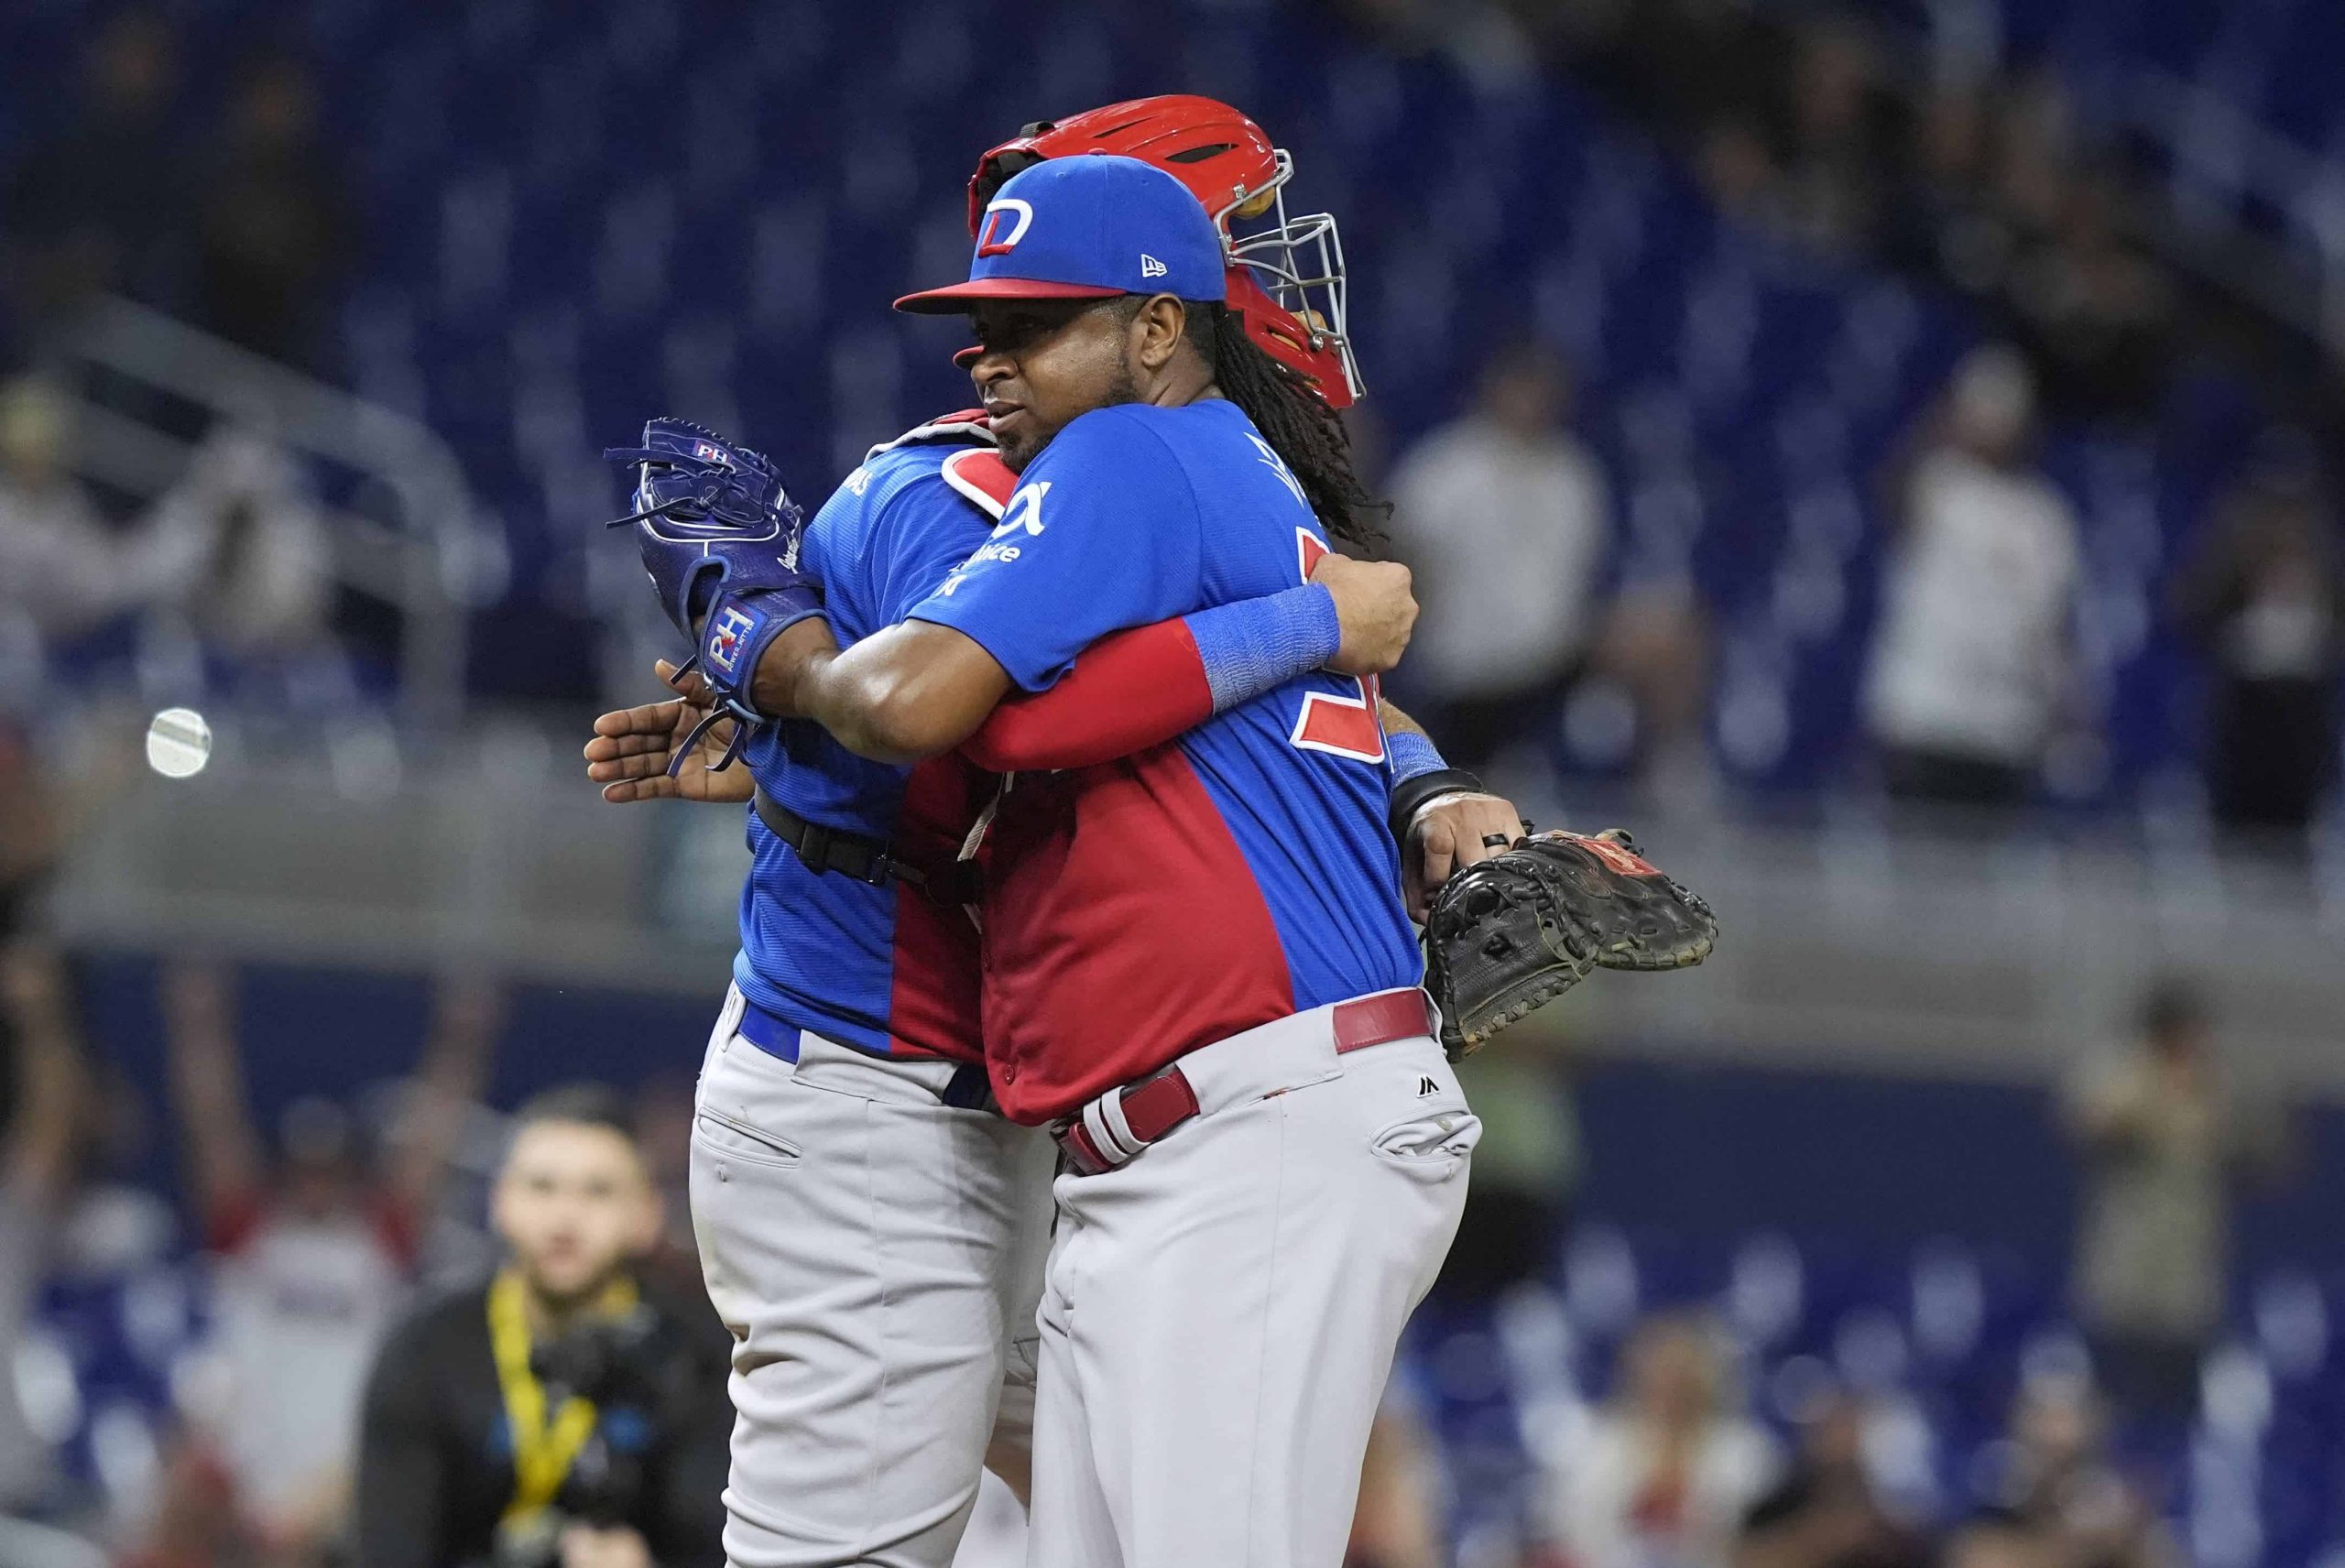 República Dominicana domina a Venezuela en últimos duelos de Series del Caribe